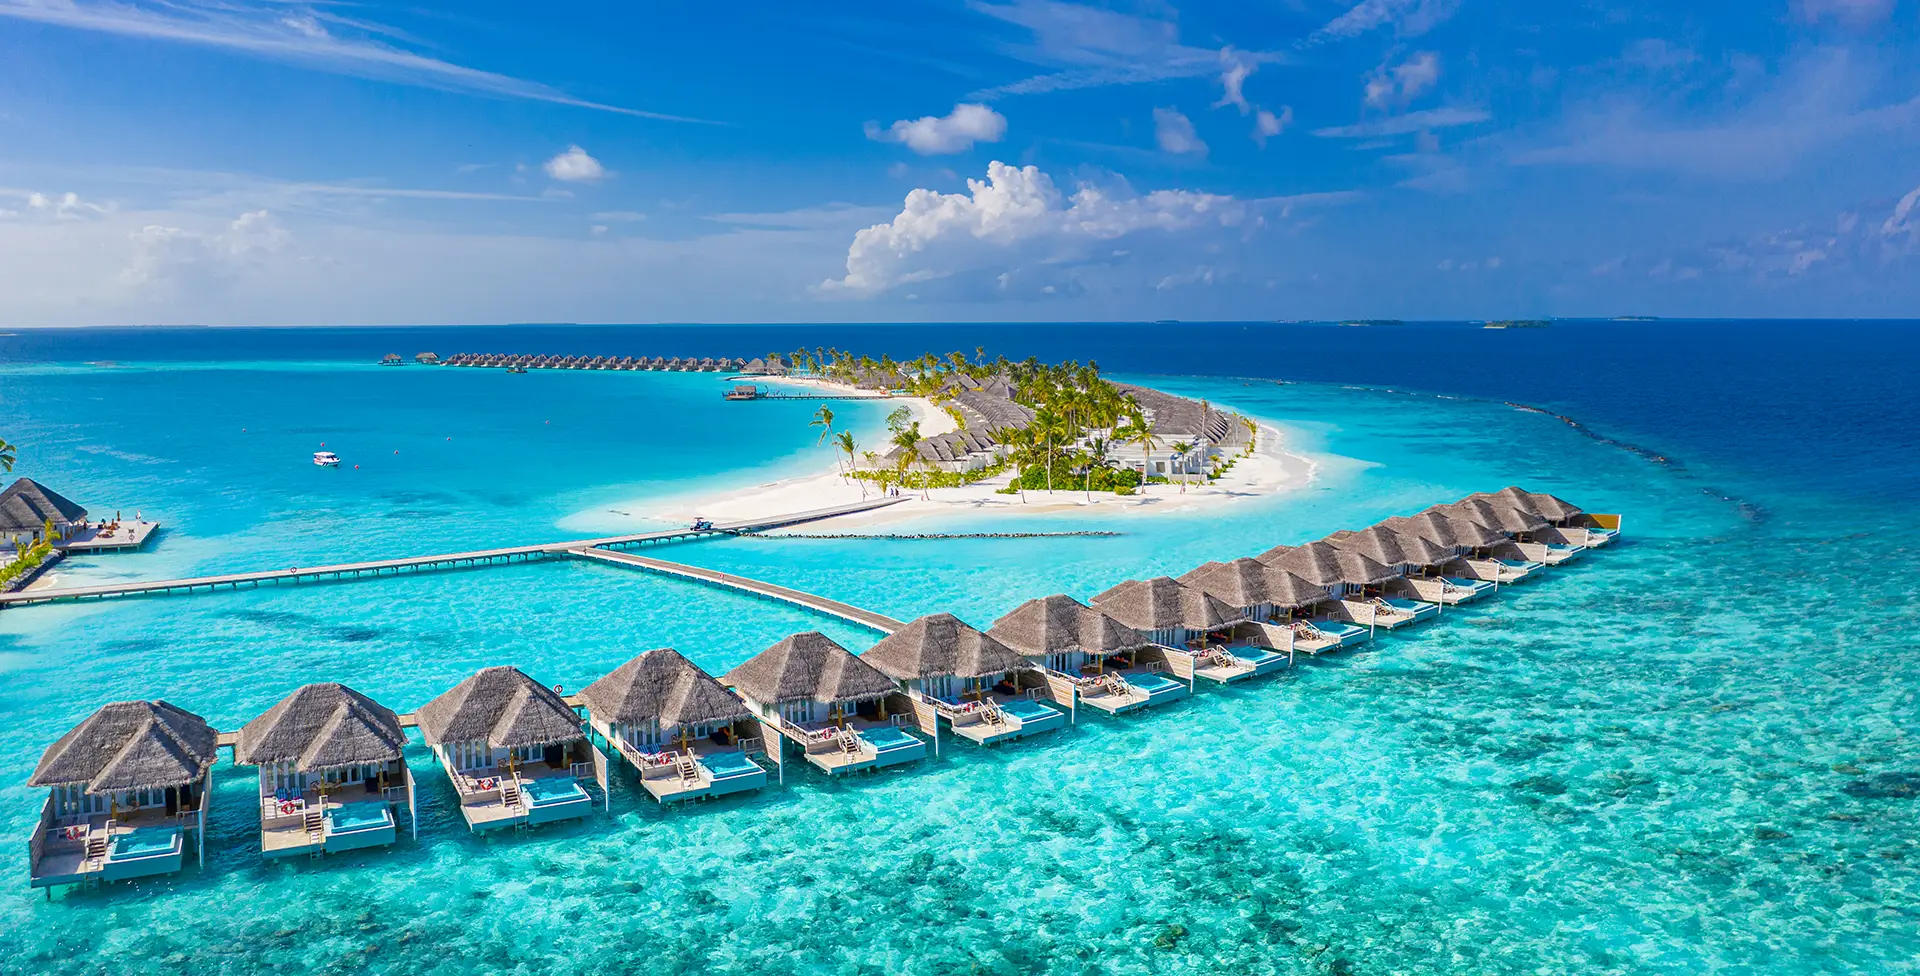 maldivler-pasaportu-vizesiz-ulkeler-listesi